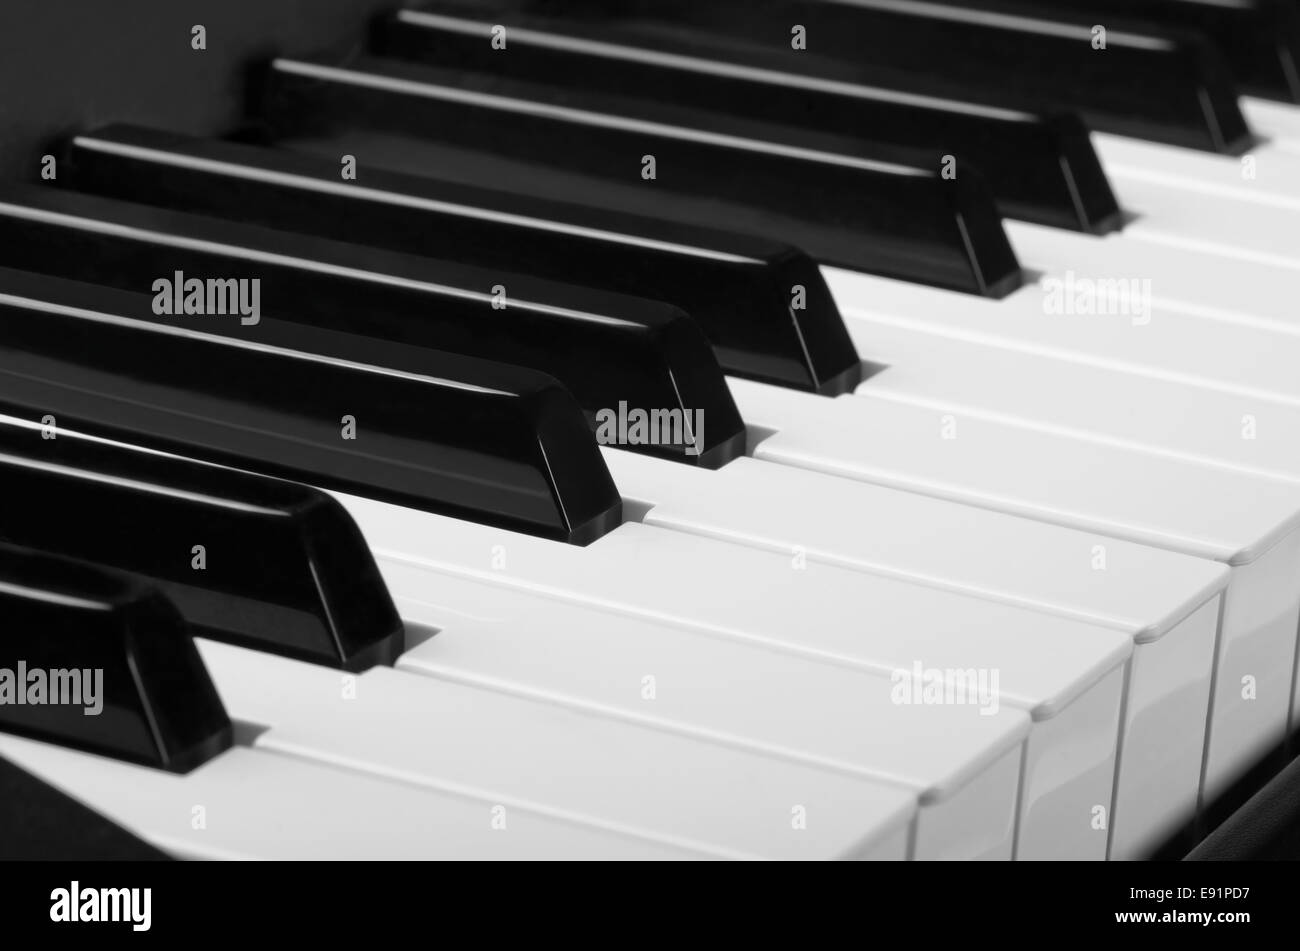 Clavier de piano Banque D'Images